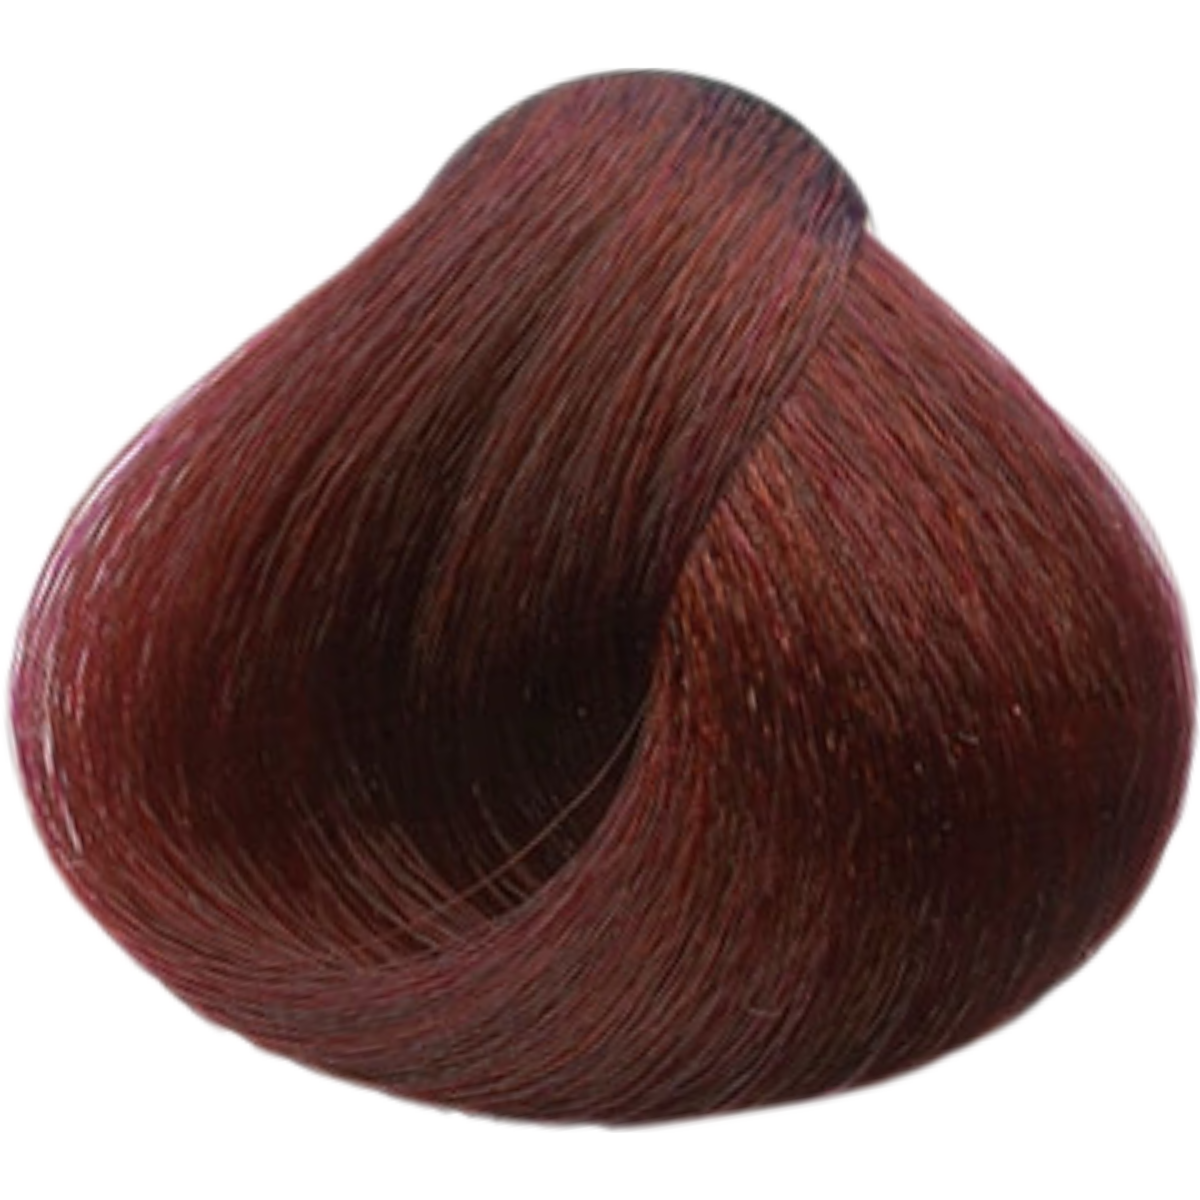 צבע שיער 6.62 DARK RED VIOLET BLONDE פארמויטה FarmaVita צבע לשיער 60 גרם